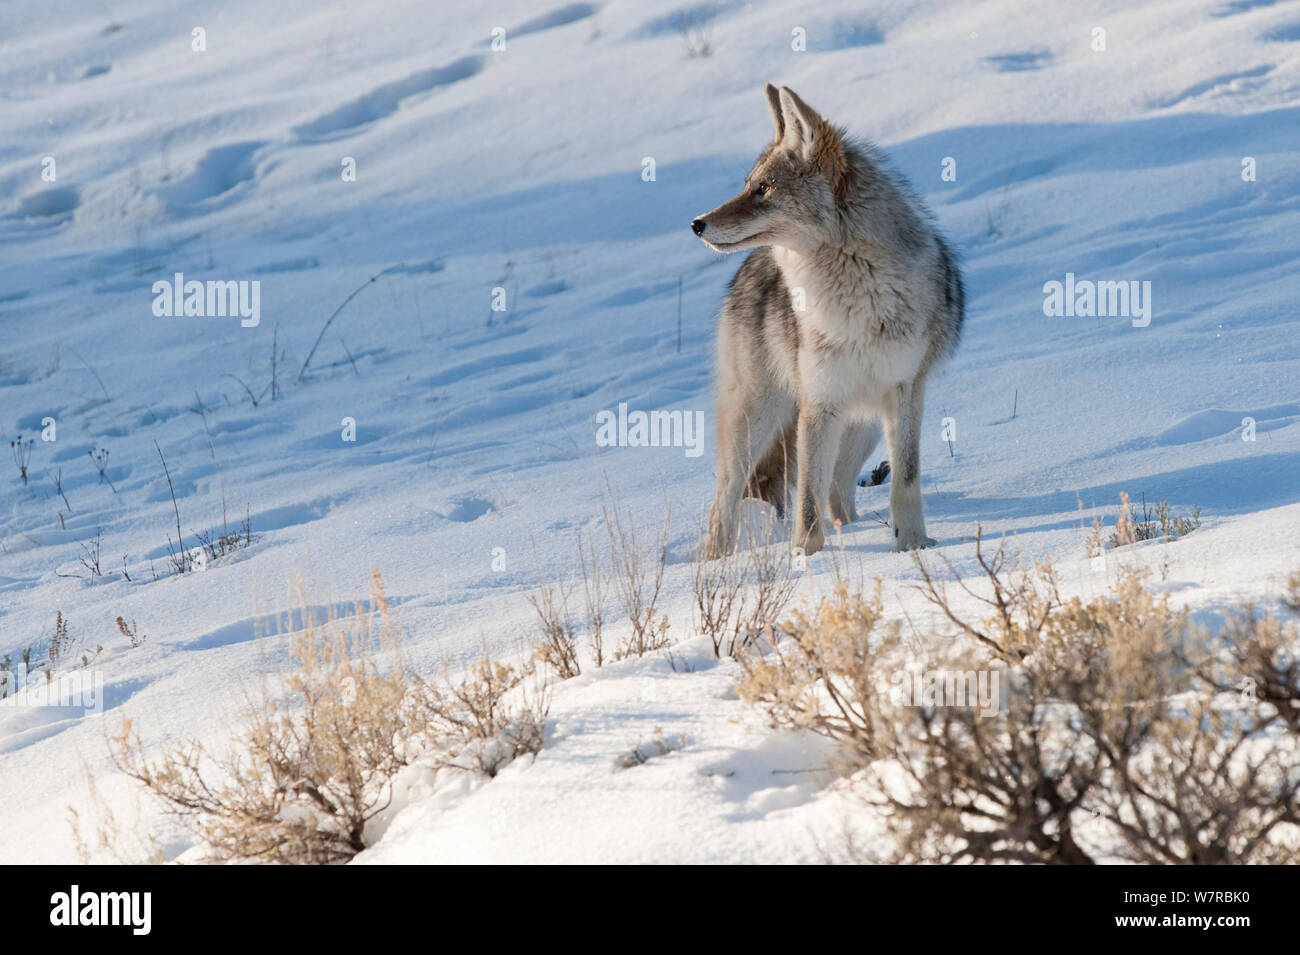 Le Coyote (Canis latrans) avec debout dans la neige, Parc National de Yellowstone, Wyoming, USA. Février. Banque D'Images